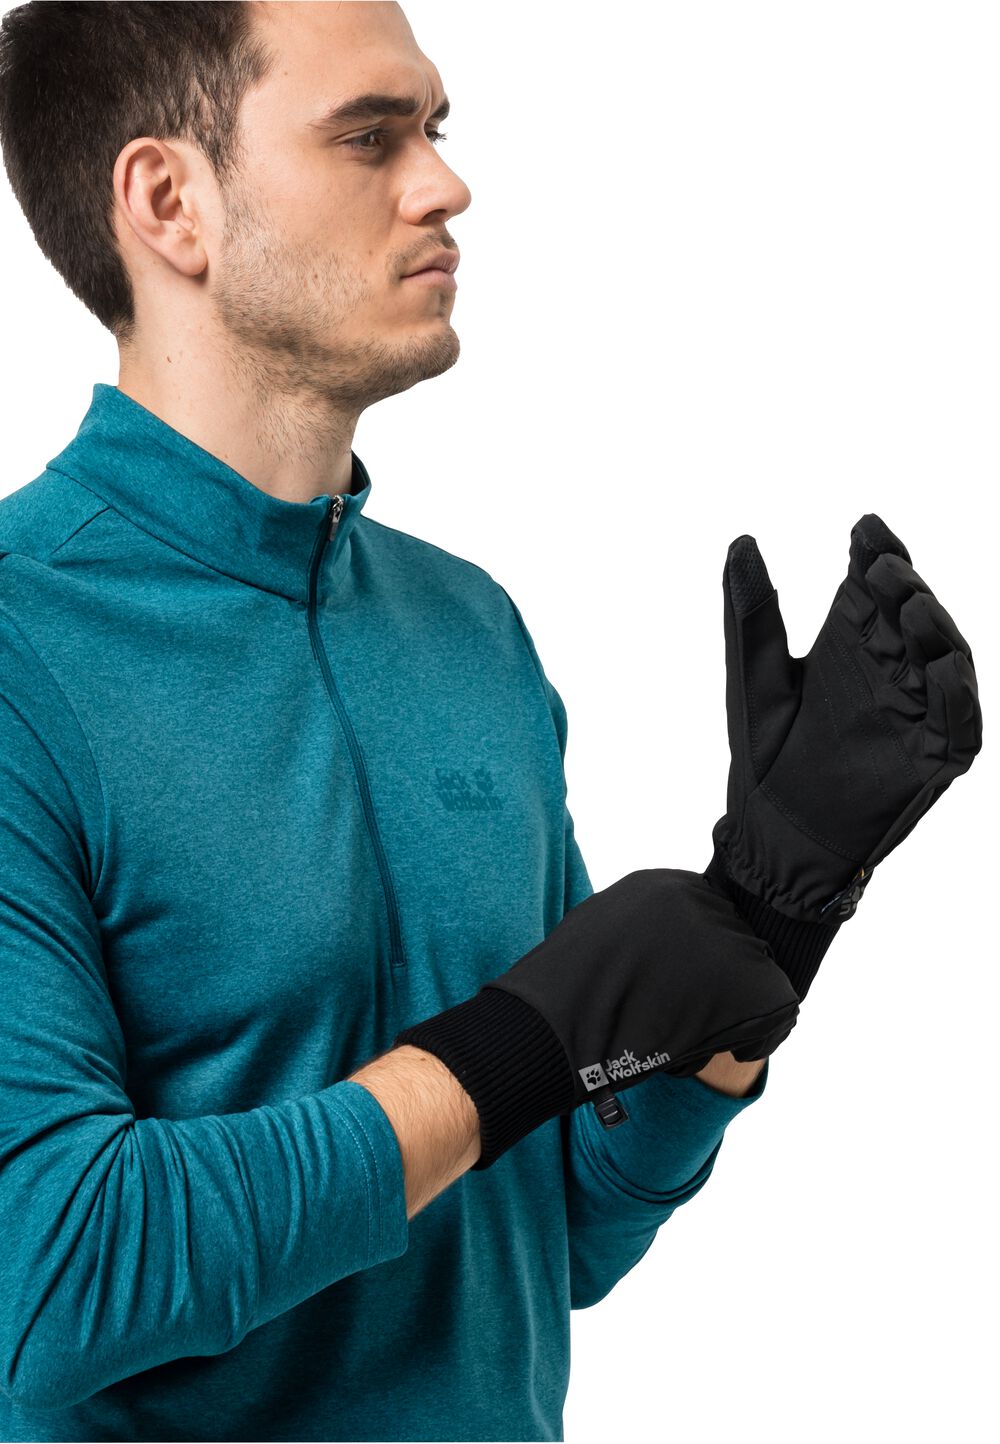 Jack Wolfskin Supersonic Extended Version Glove Winddichte handschoenen L zwart black